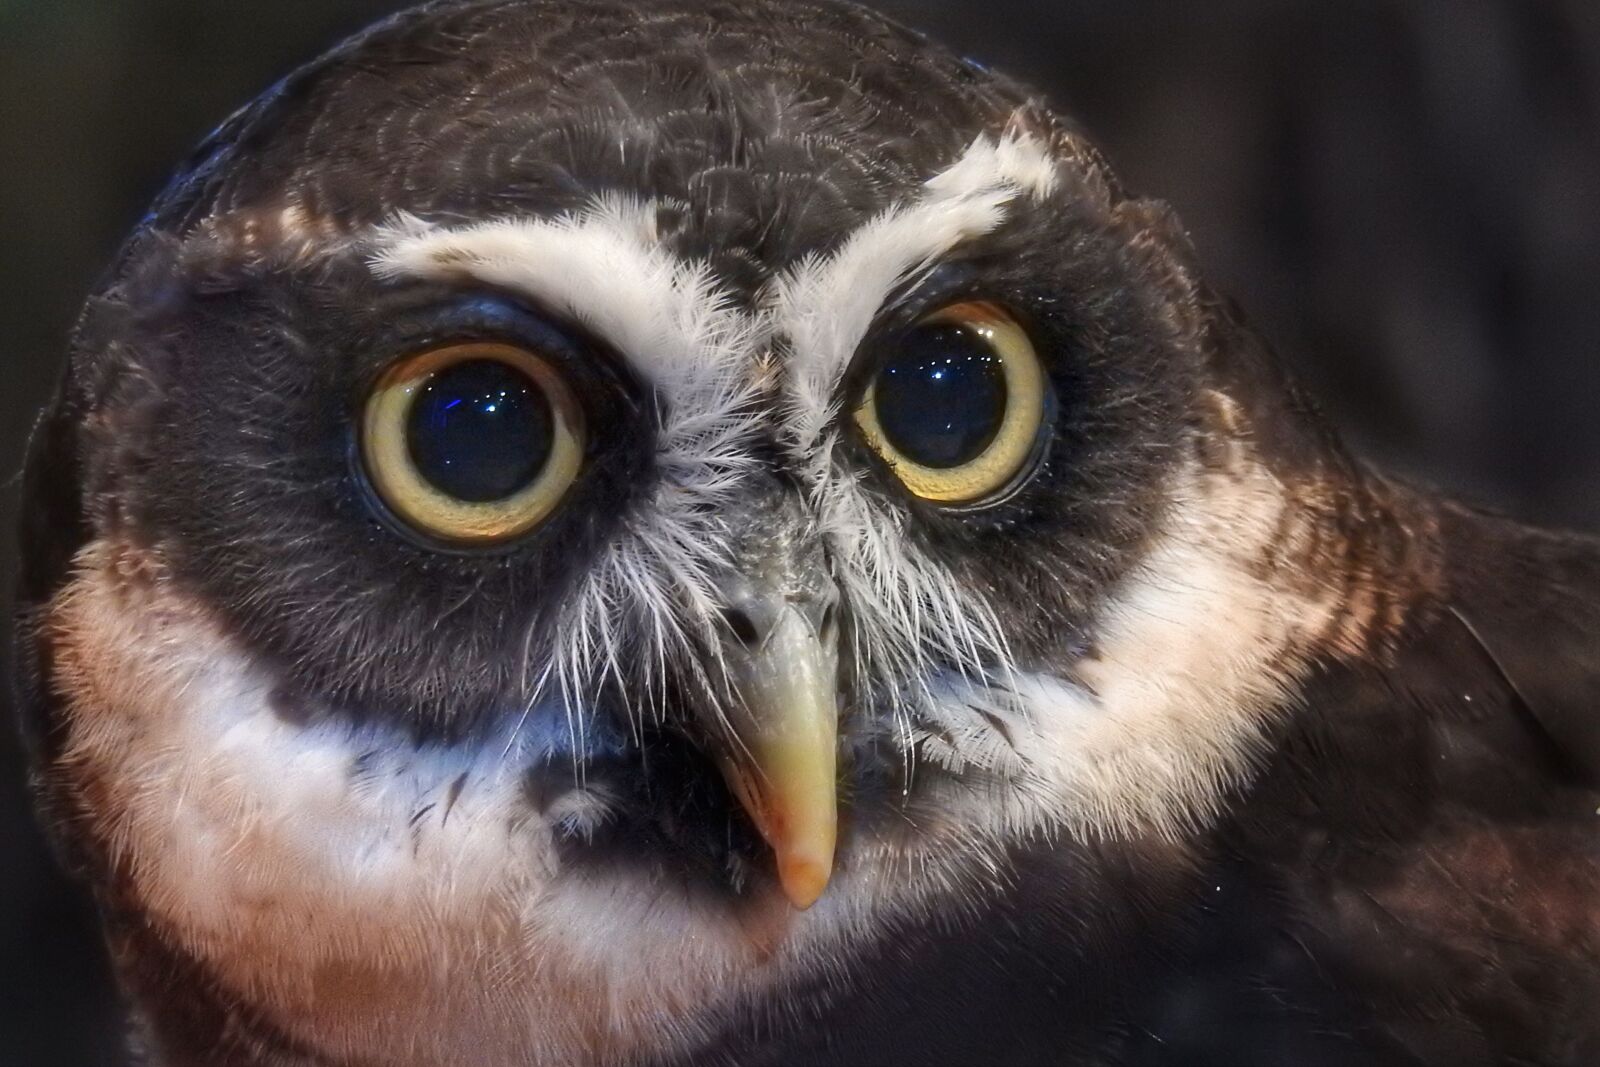 Nikon Coolpix P900 sample photo. Owl, spectacled owl, bird photography